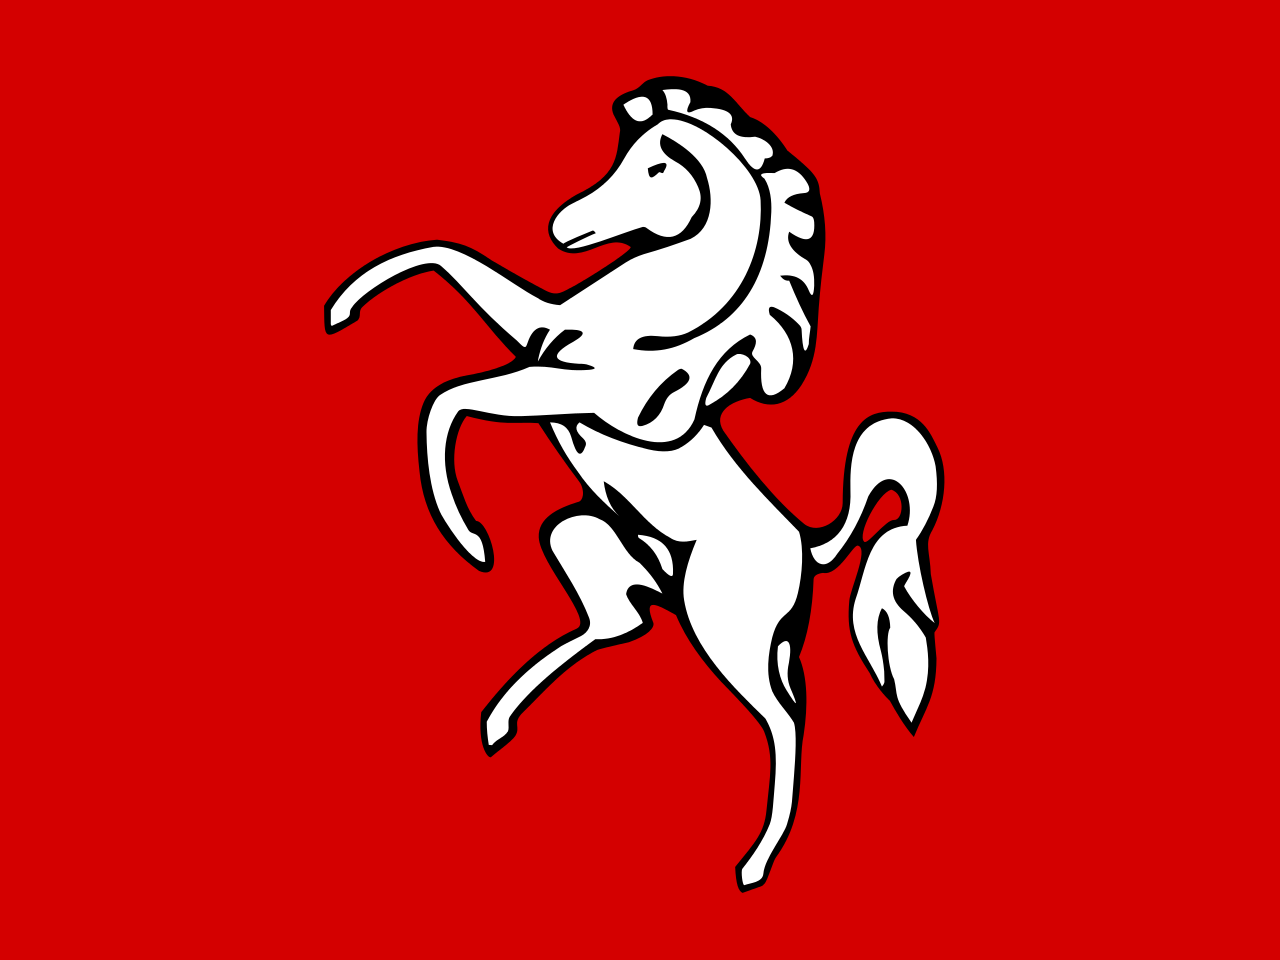 Kent (765-825)